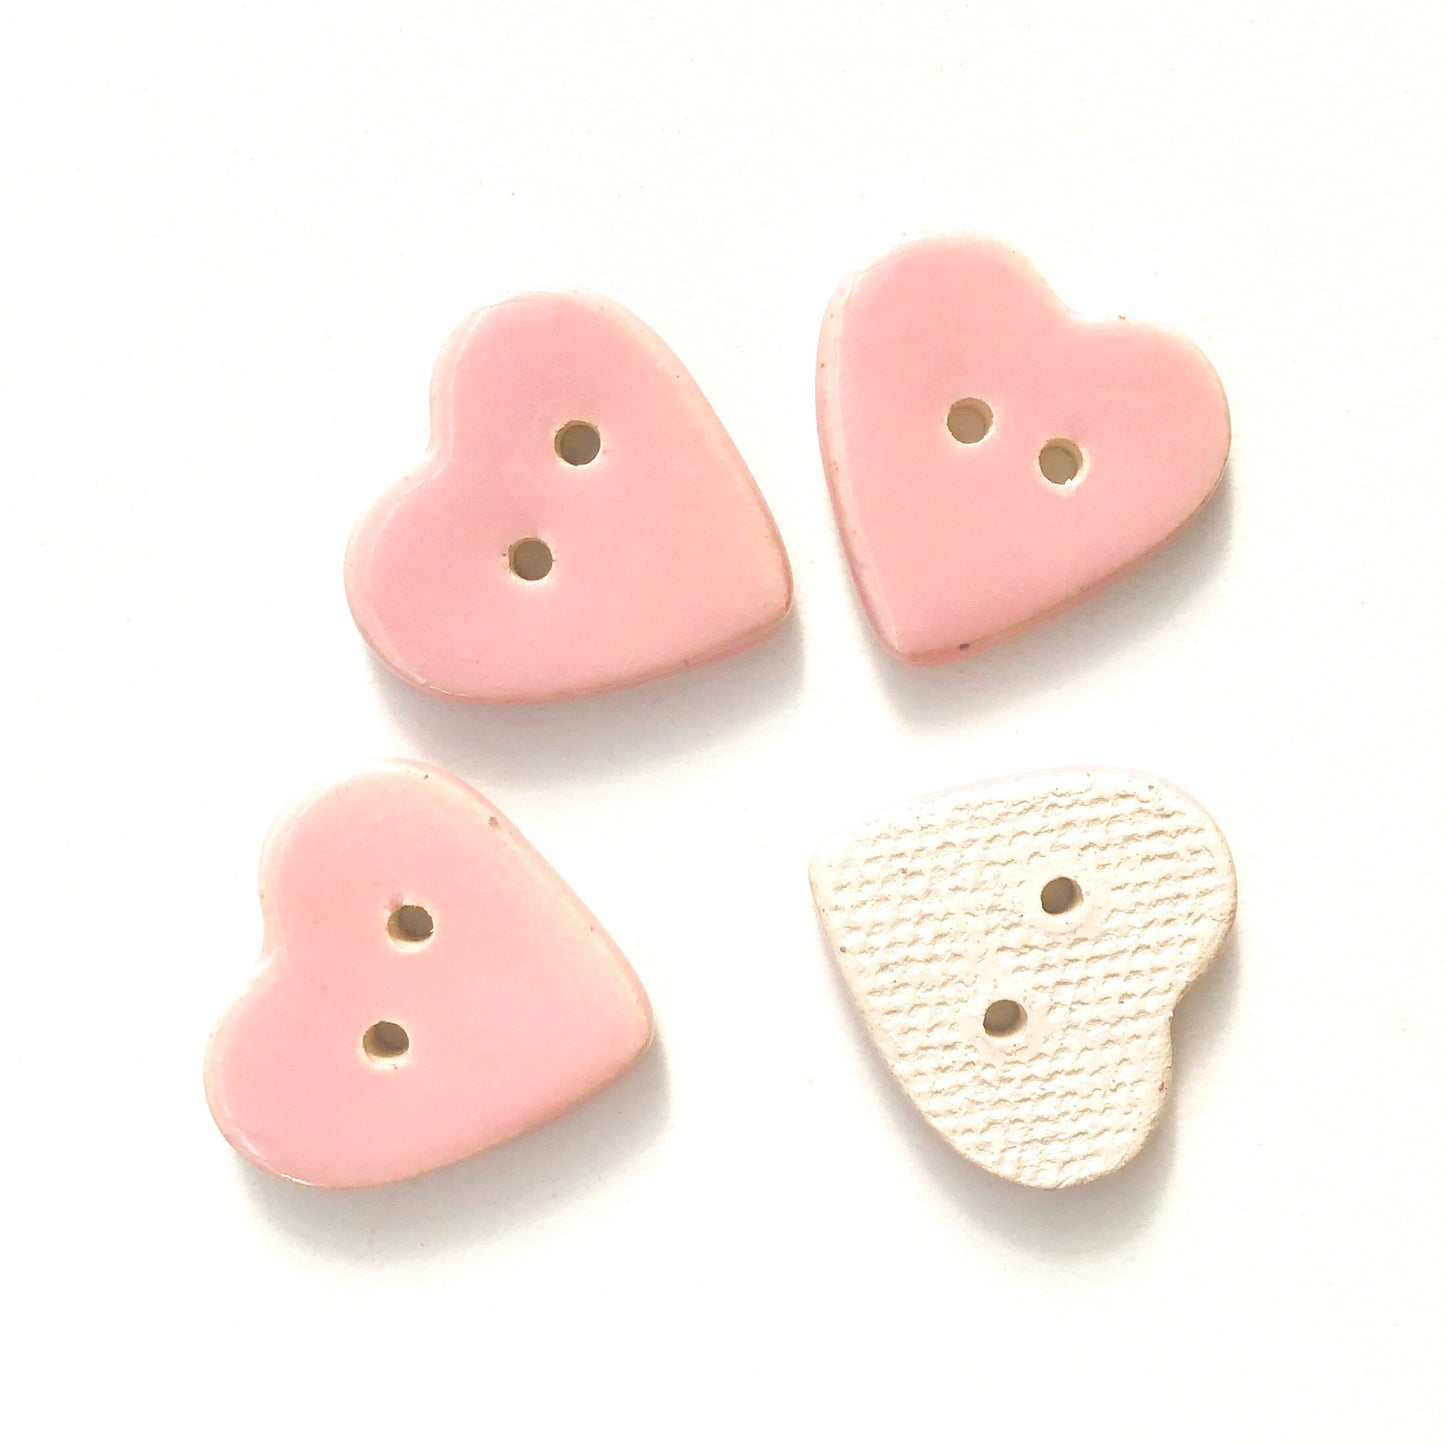 Soft Pink Heart Buttons - Ceramic Heart Buttons - 7/8" (ws-197)